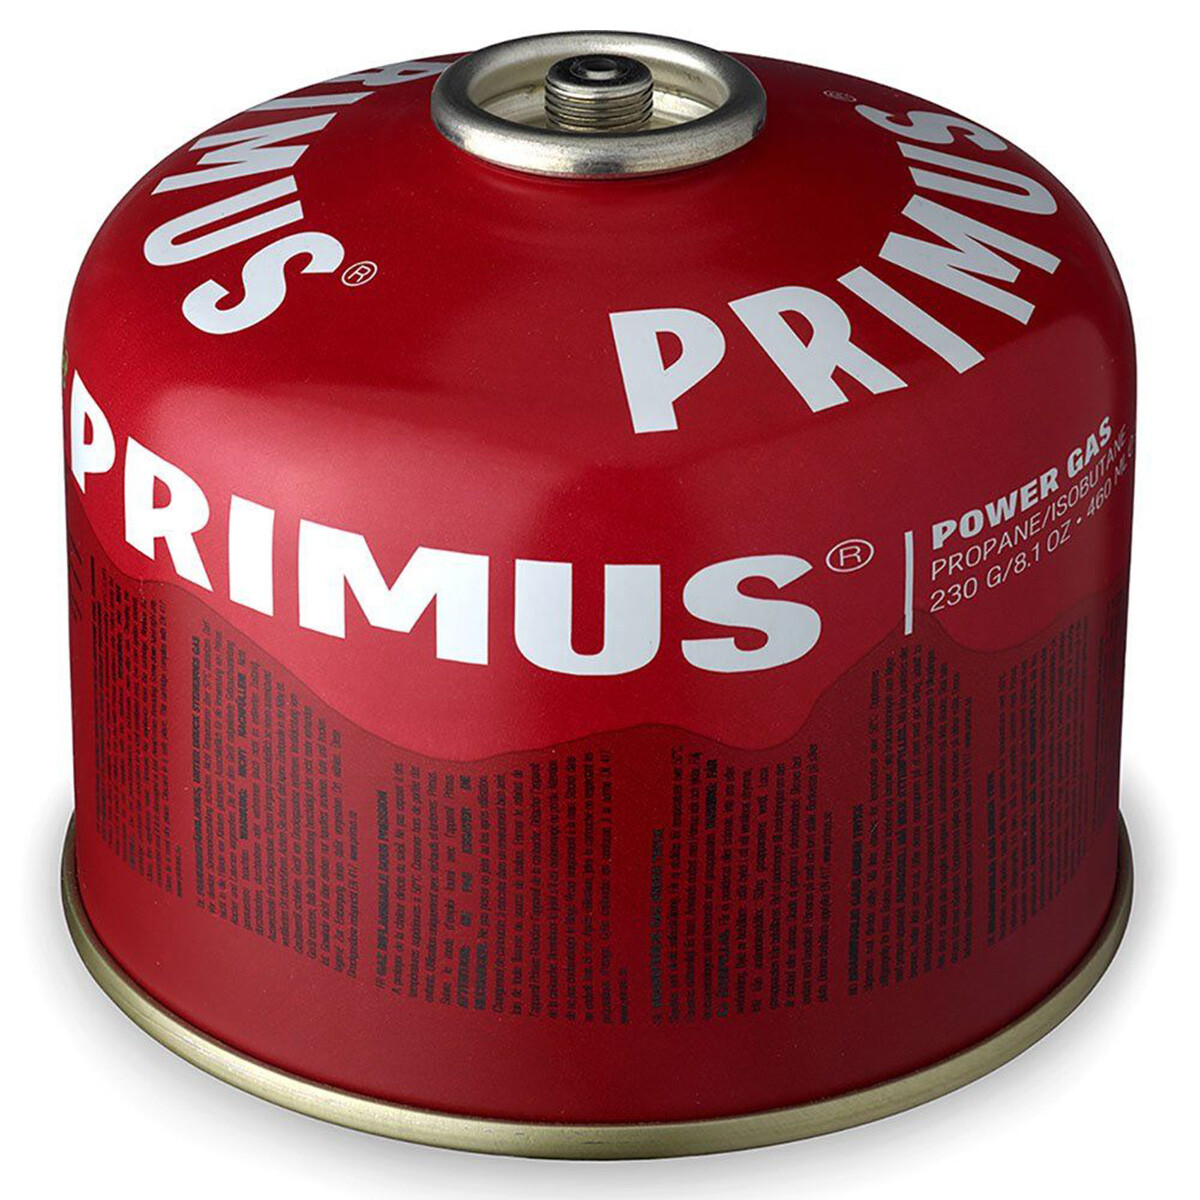 Billede af Primus Power Gas 230 gram L2